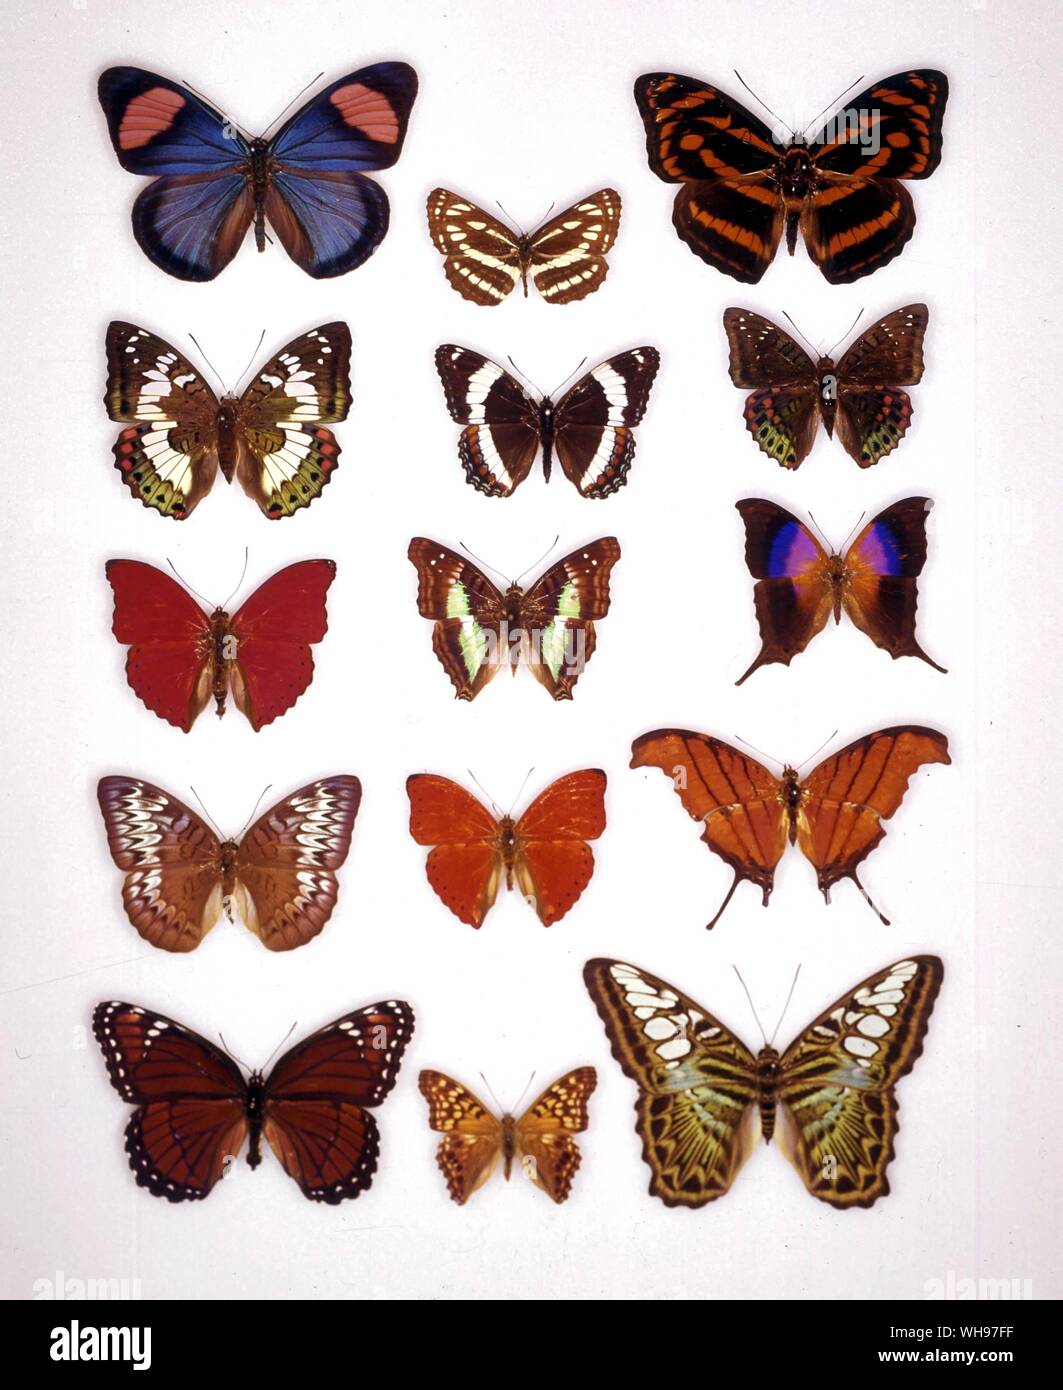 Butterflies/moths - (left to right) Batesia hypochlora, Neptis sappho, Pantoporia eulimene, Euthalia adonia (female), Limenitis arthemis, Euthalia adonia (male), Cymothoe sangaris, Doxocopa lavinia, Marpesia iole, Tanaecia pelea, Cymothoe coccinata, Marpesia petreus, Limenitis archippus, Asterocampa clyton, parthenos sylvia Stock Photo